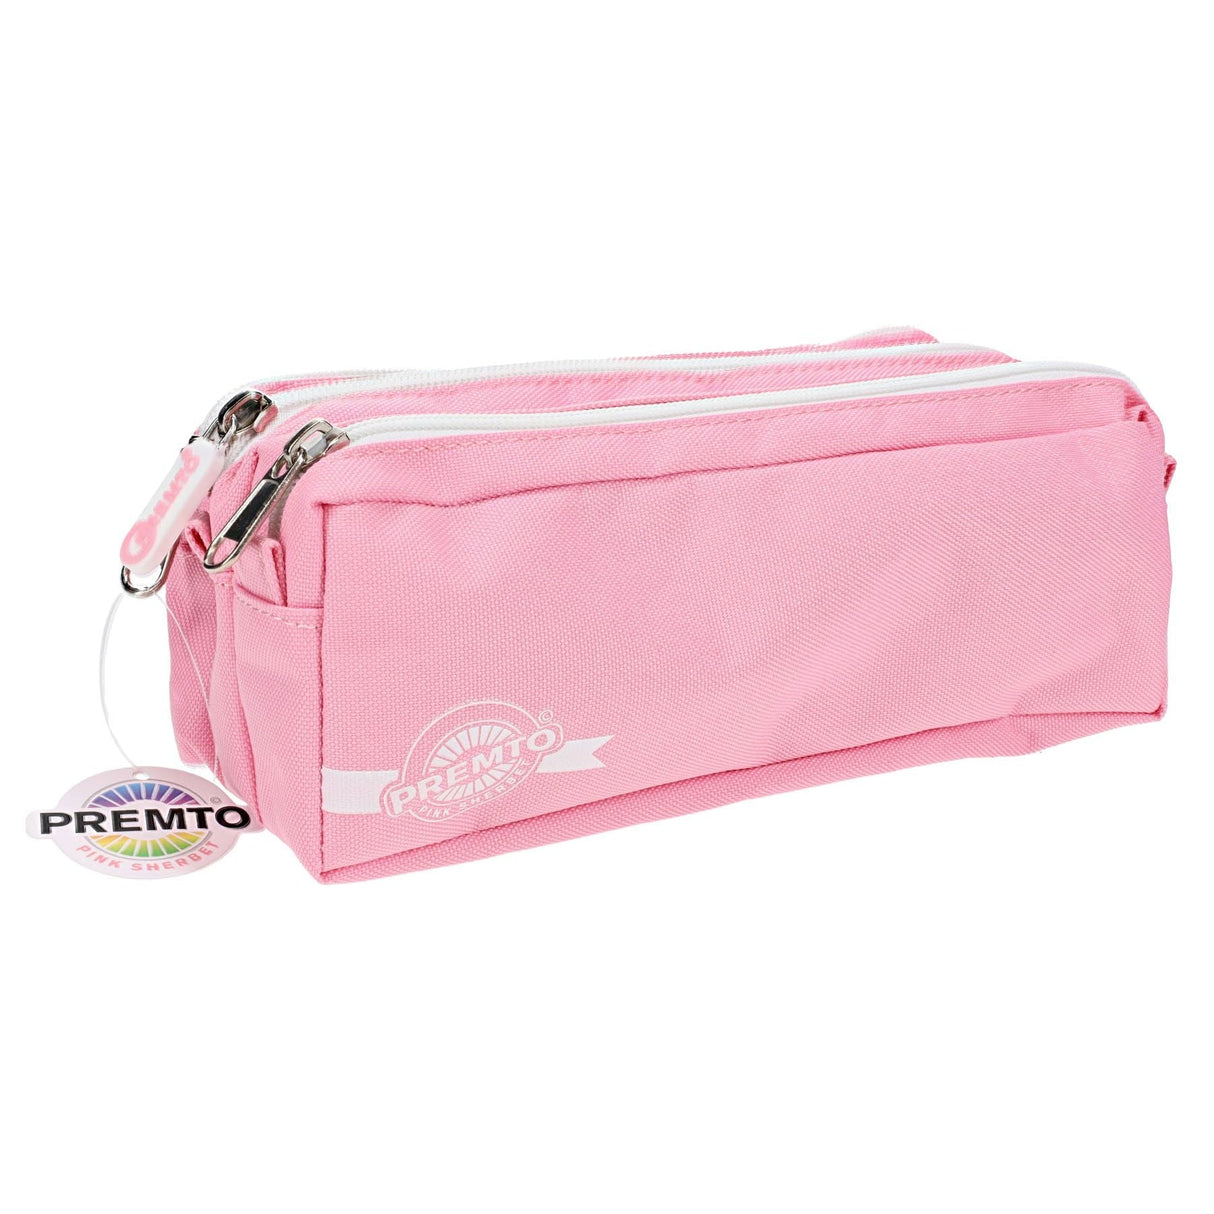 Premto 3 Pocket Pencil Case - Pink Sherbet-Pencil Cases-Premto|StationeryShop.co.uk